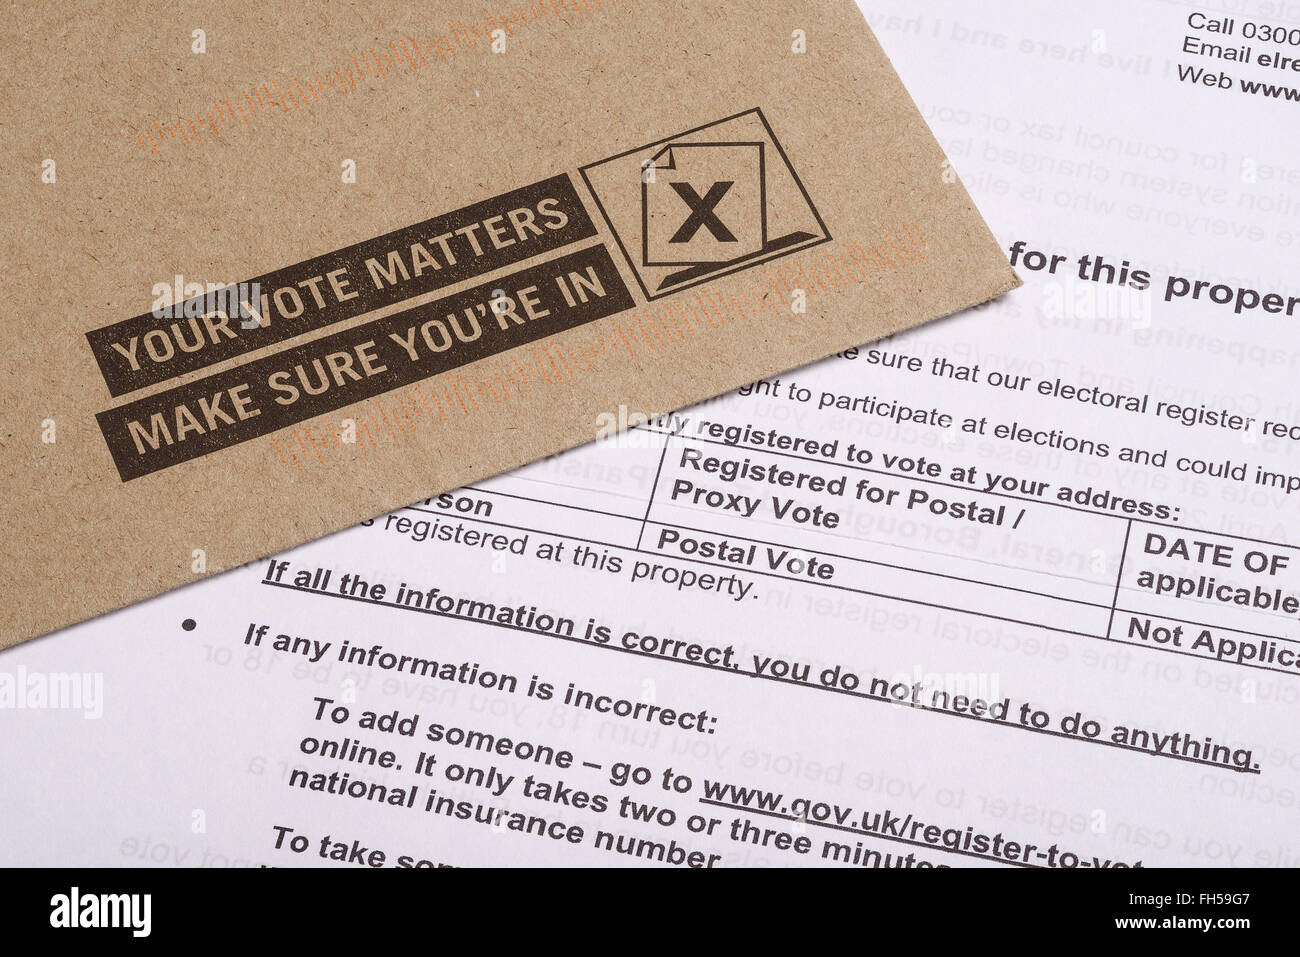 UK-Antragsformular für eine Briefwahl bei den bevorstehenden Wahlen zu registrieren Stockfoto